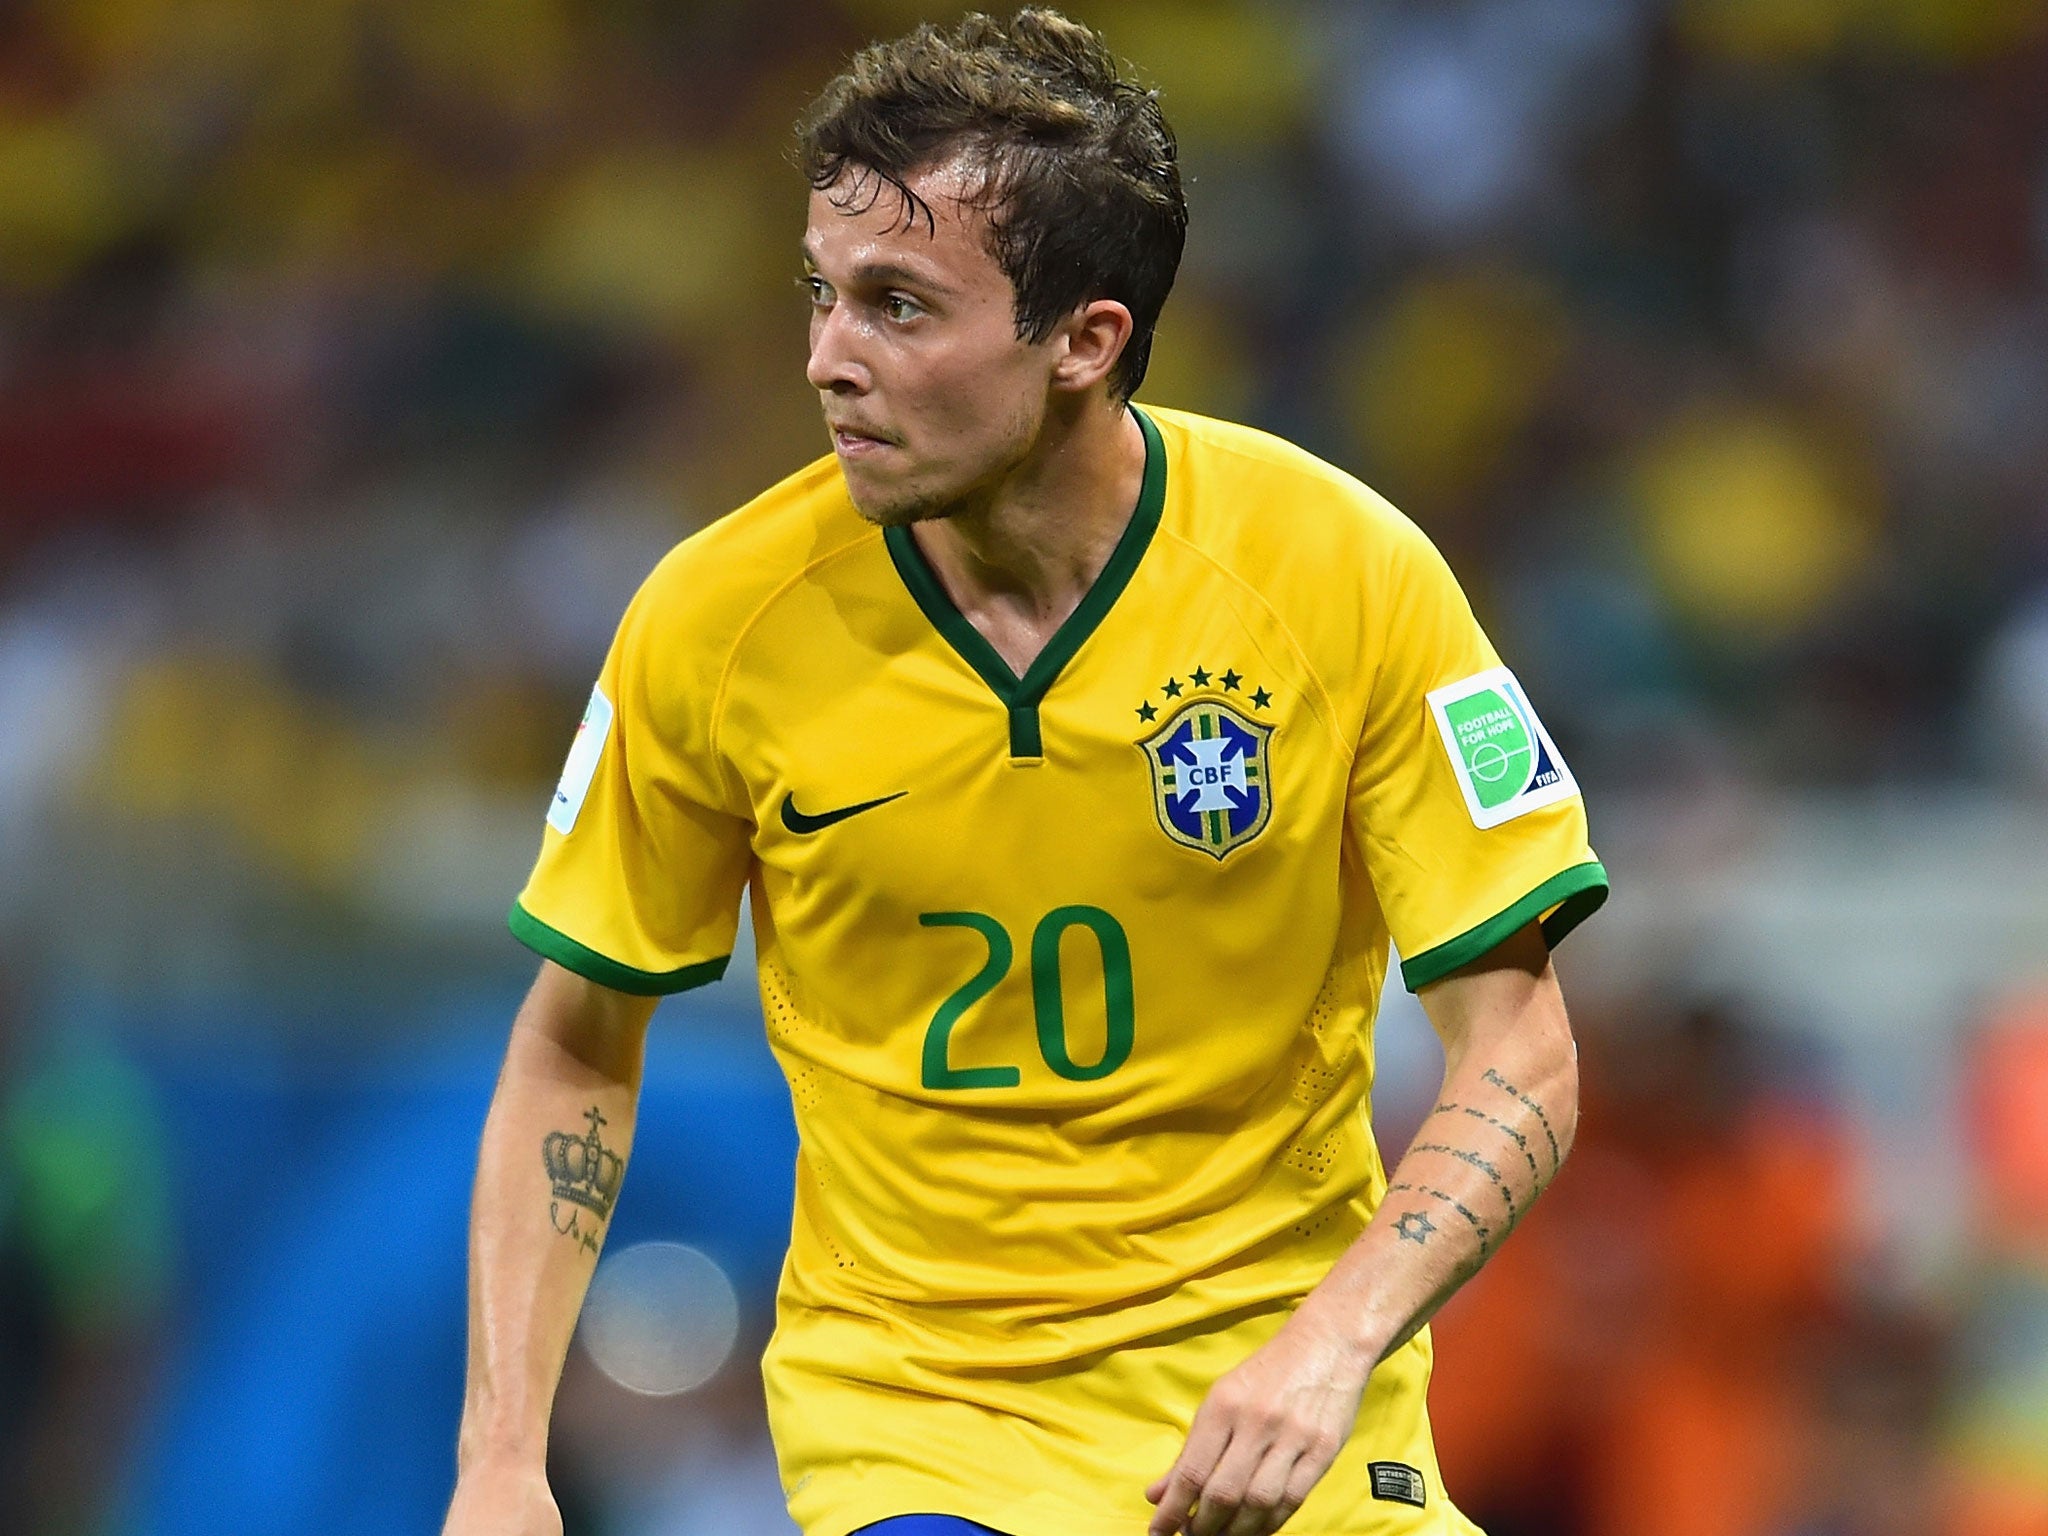 Bernard will start for Brazil